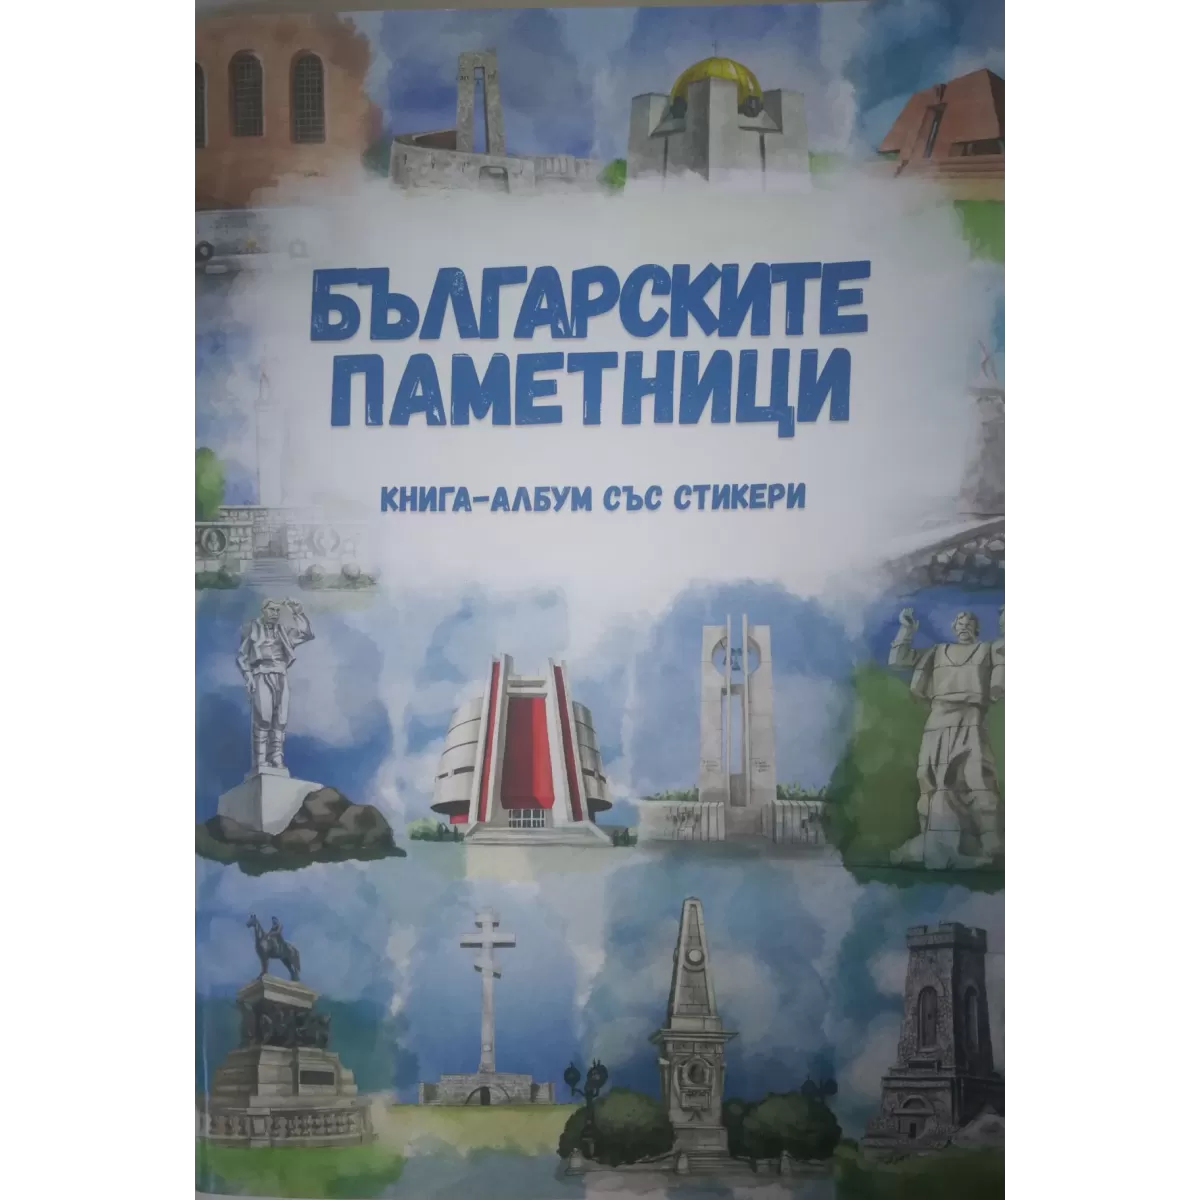 Книга-албум със стикер Българските паметници